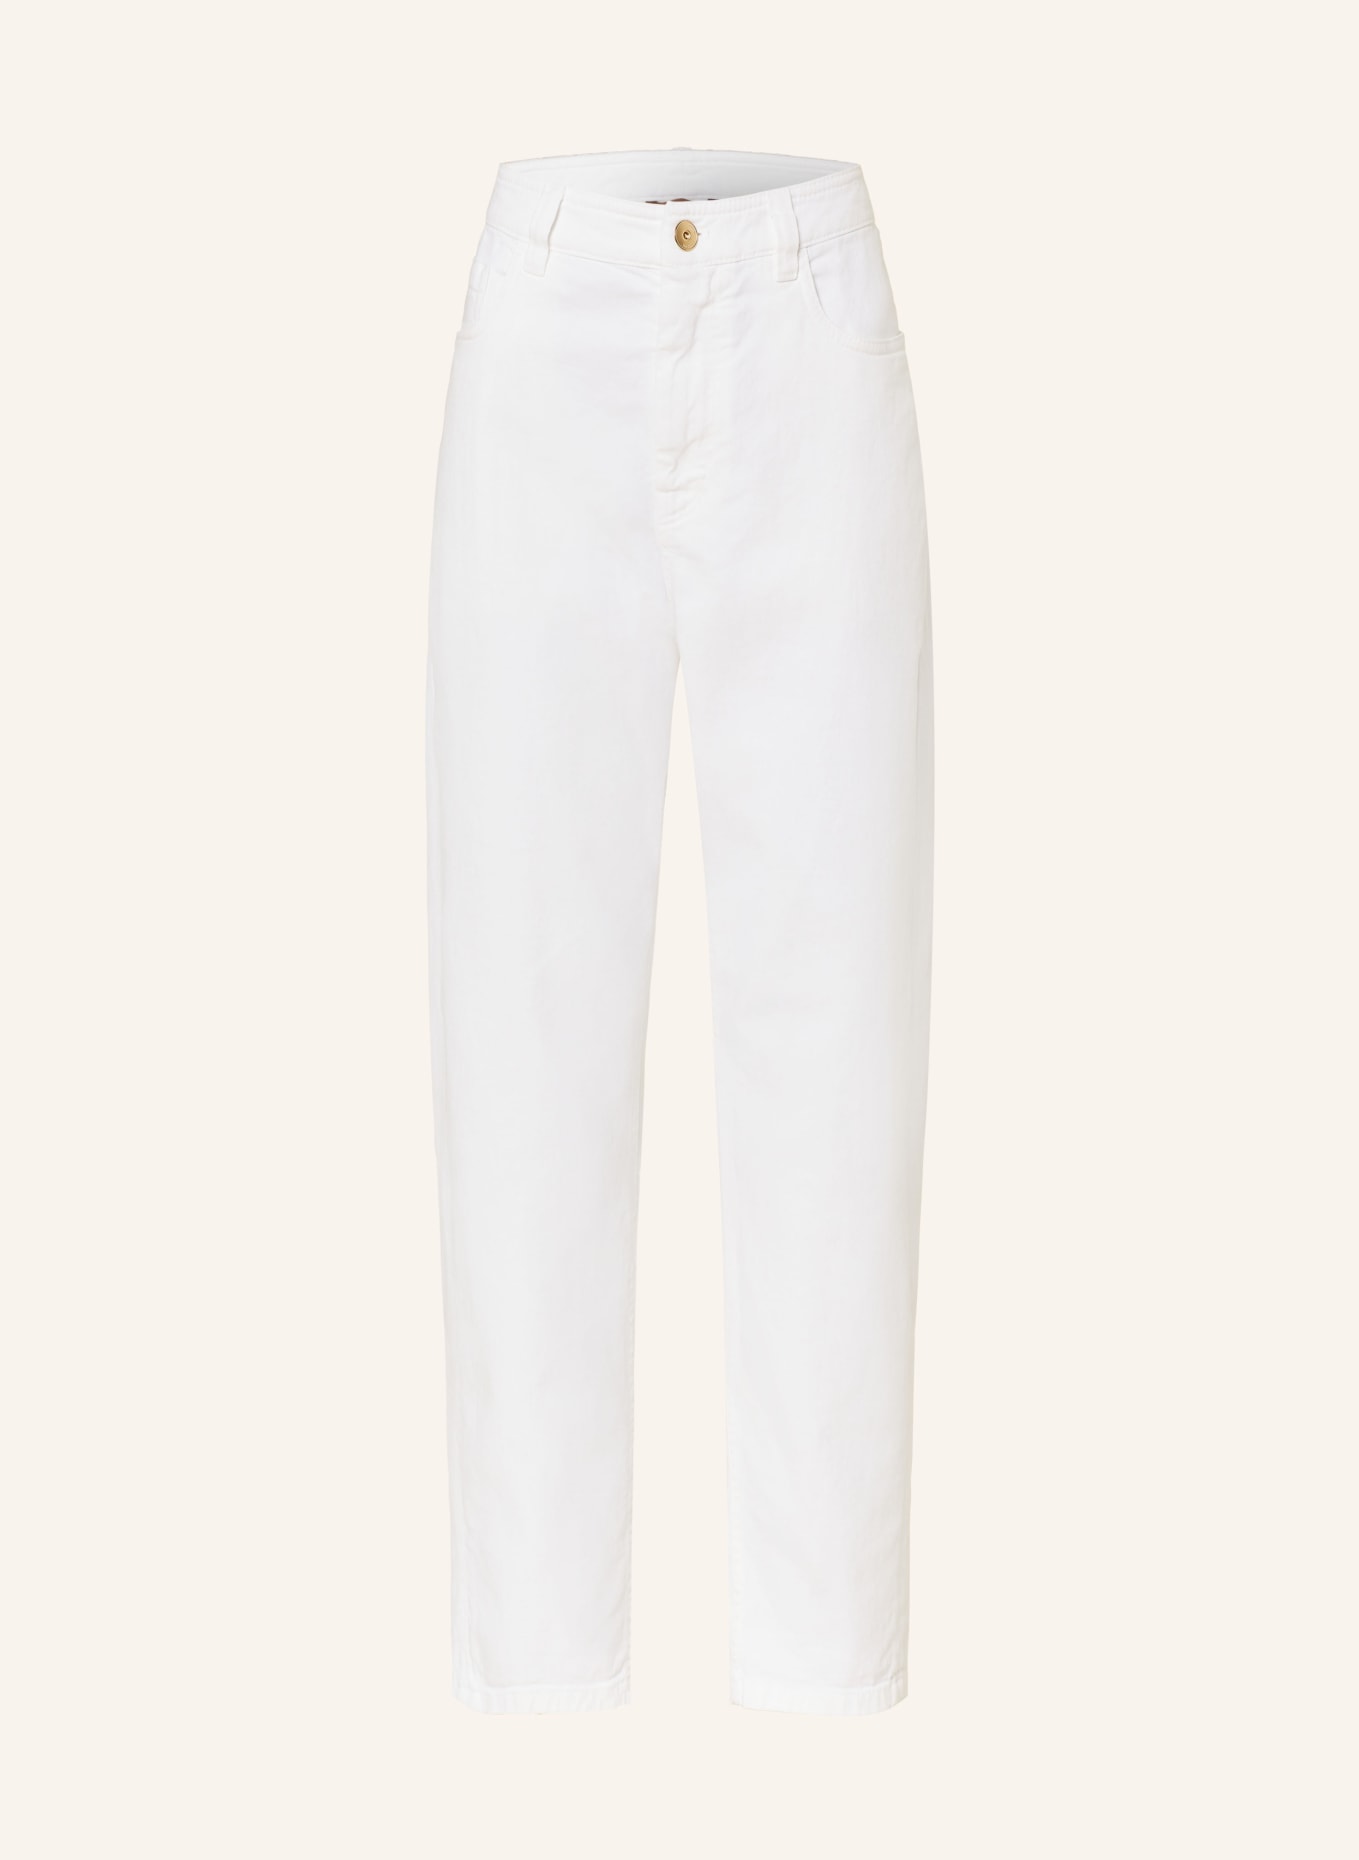 BRUNELLO CUCINELLI Mom jeans, Color: C159 BIANCO OTTICO (Image 1)